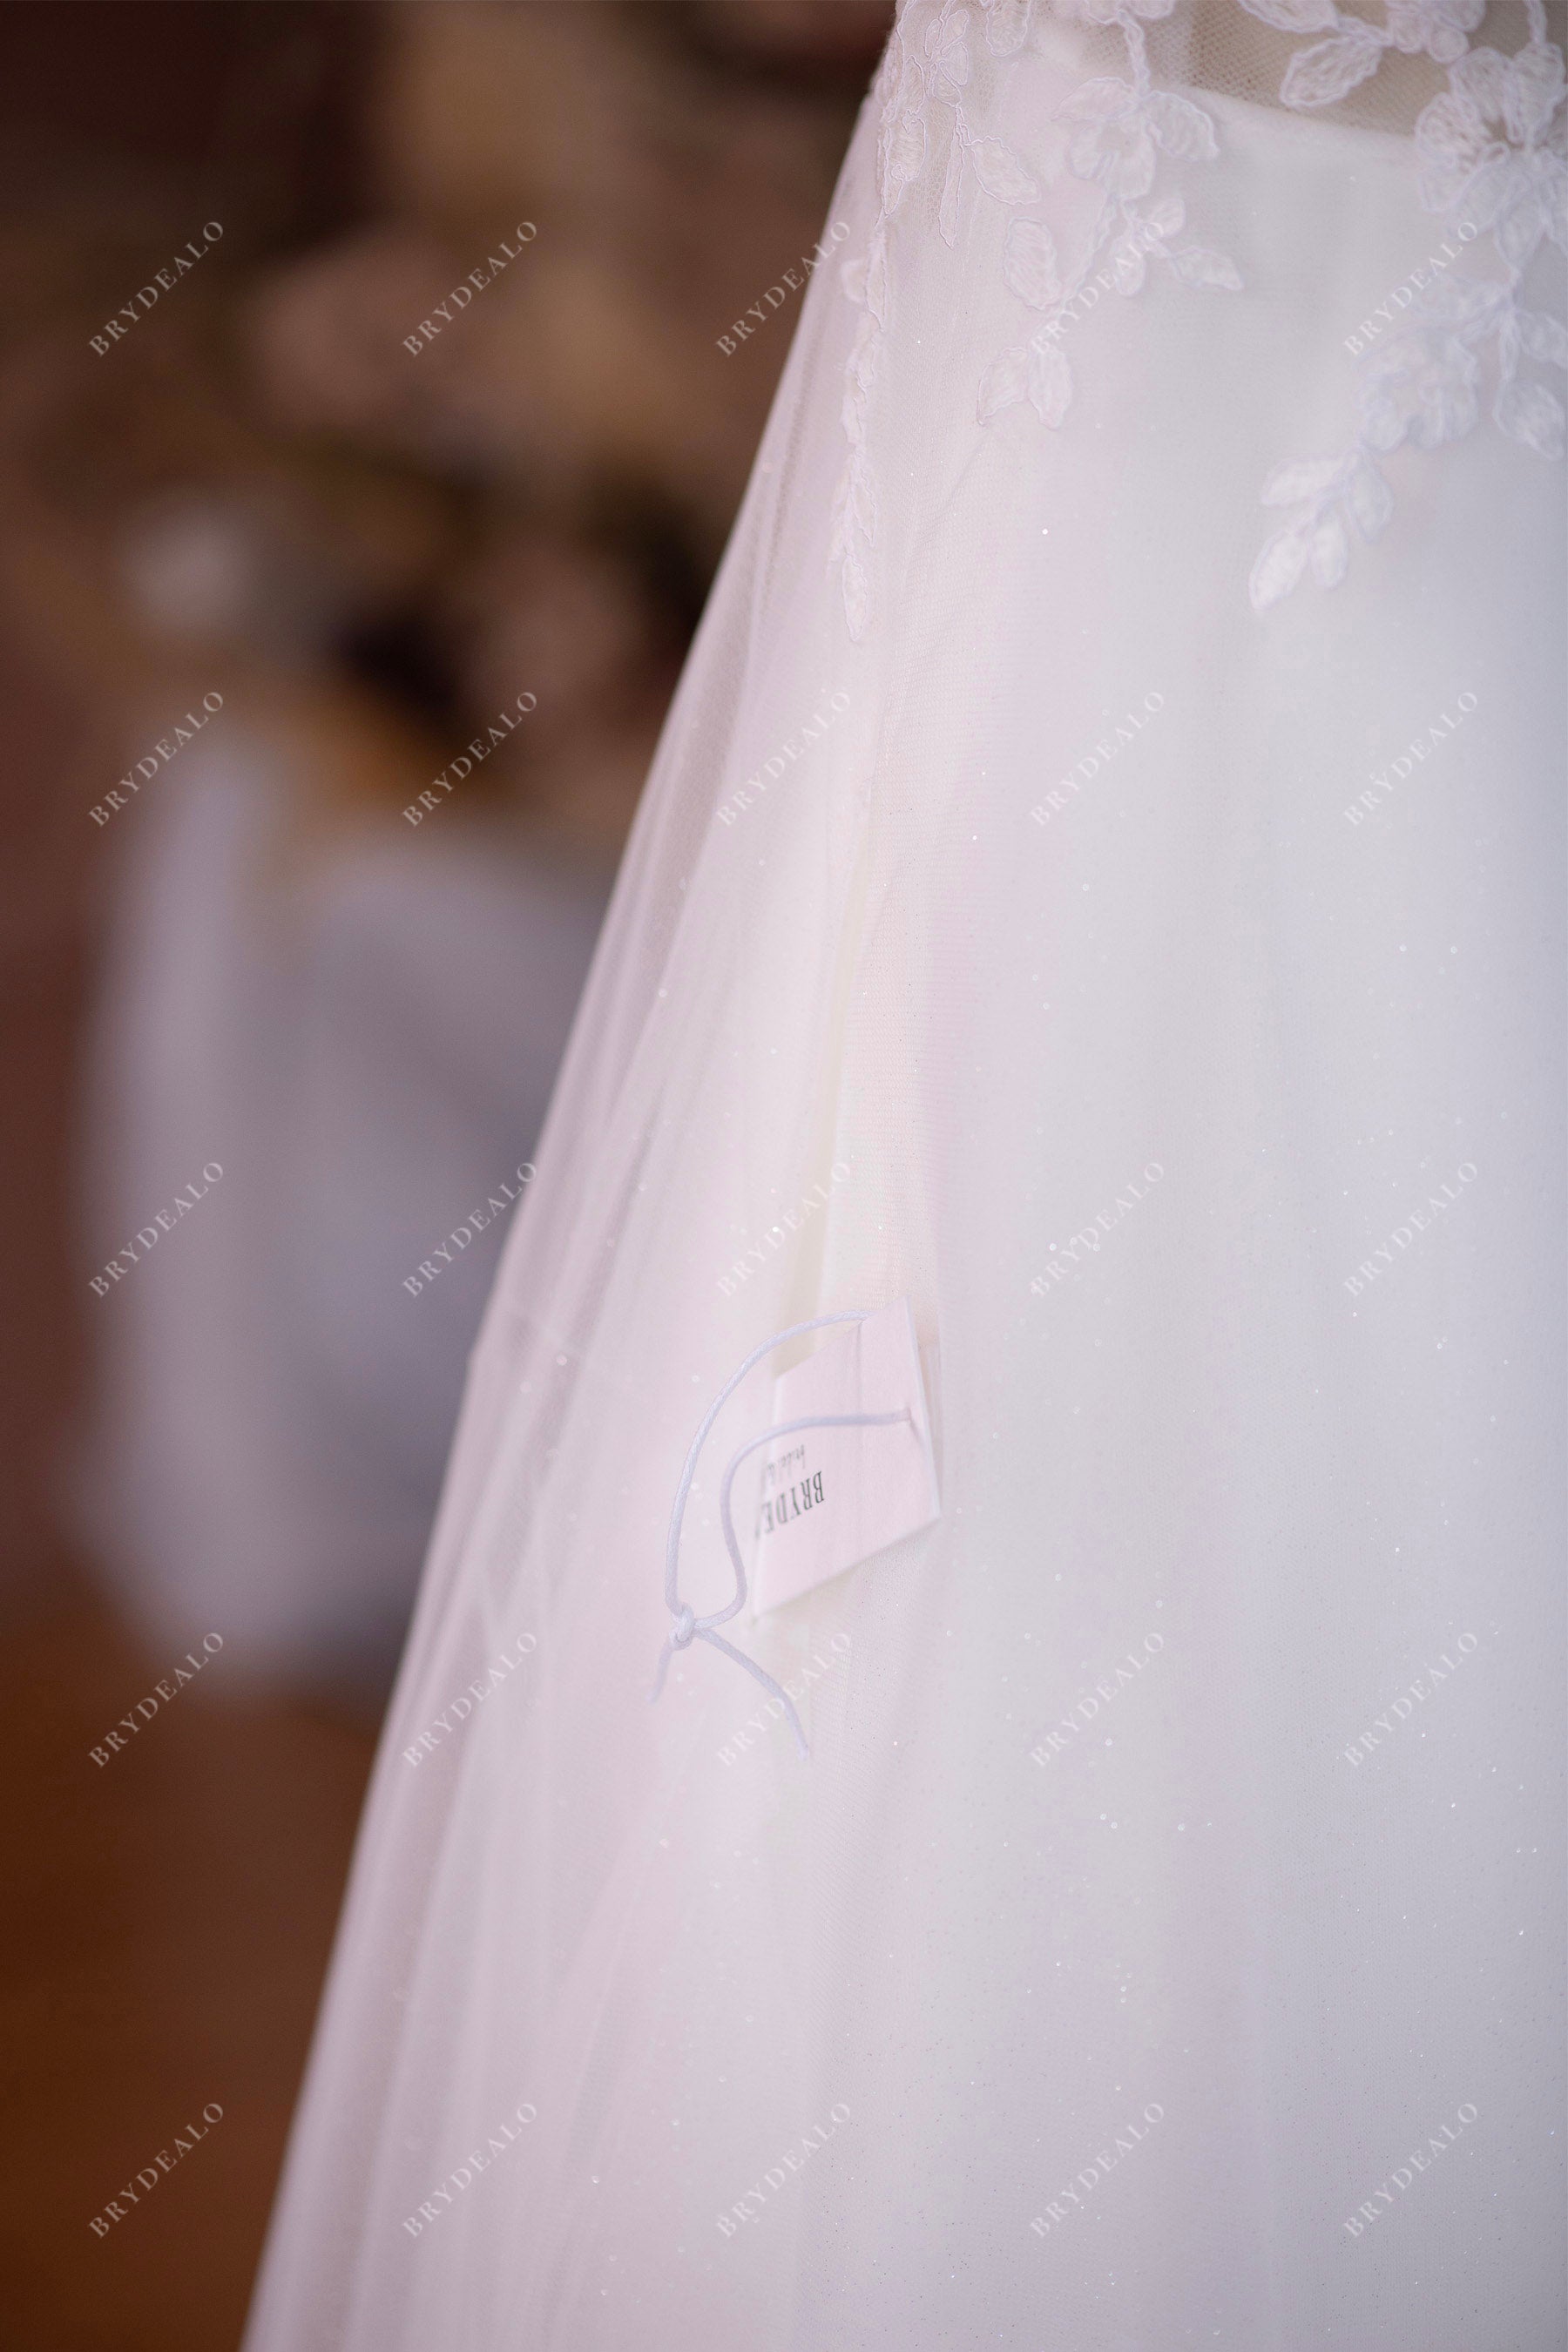 beach wedding dress with pocket